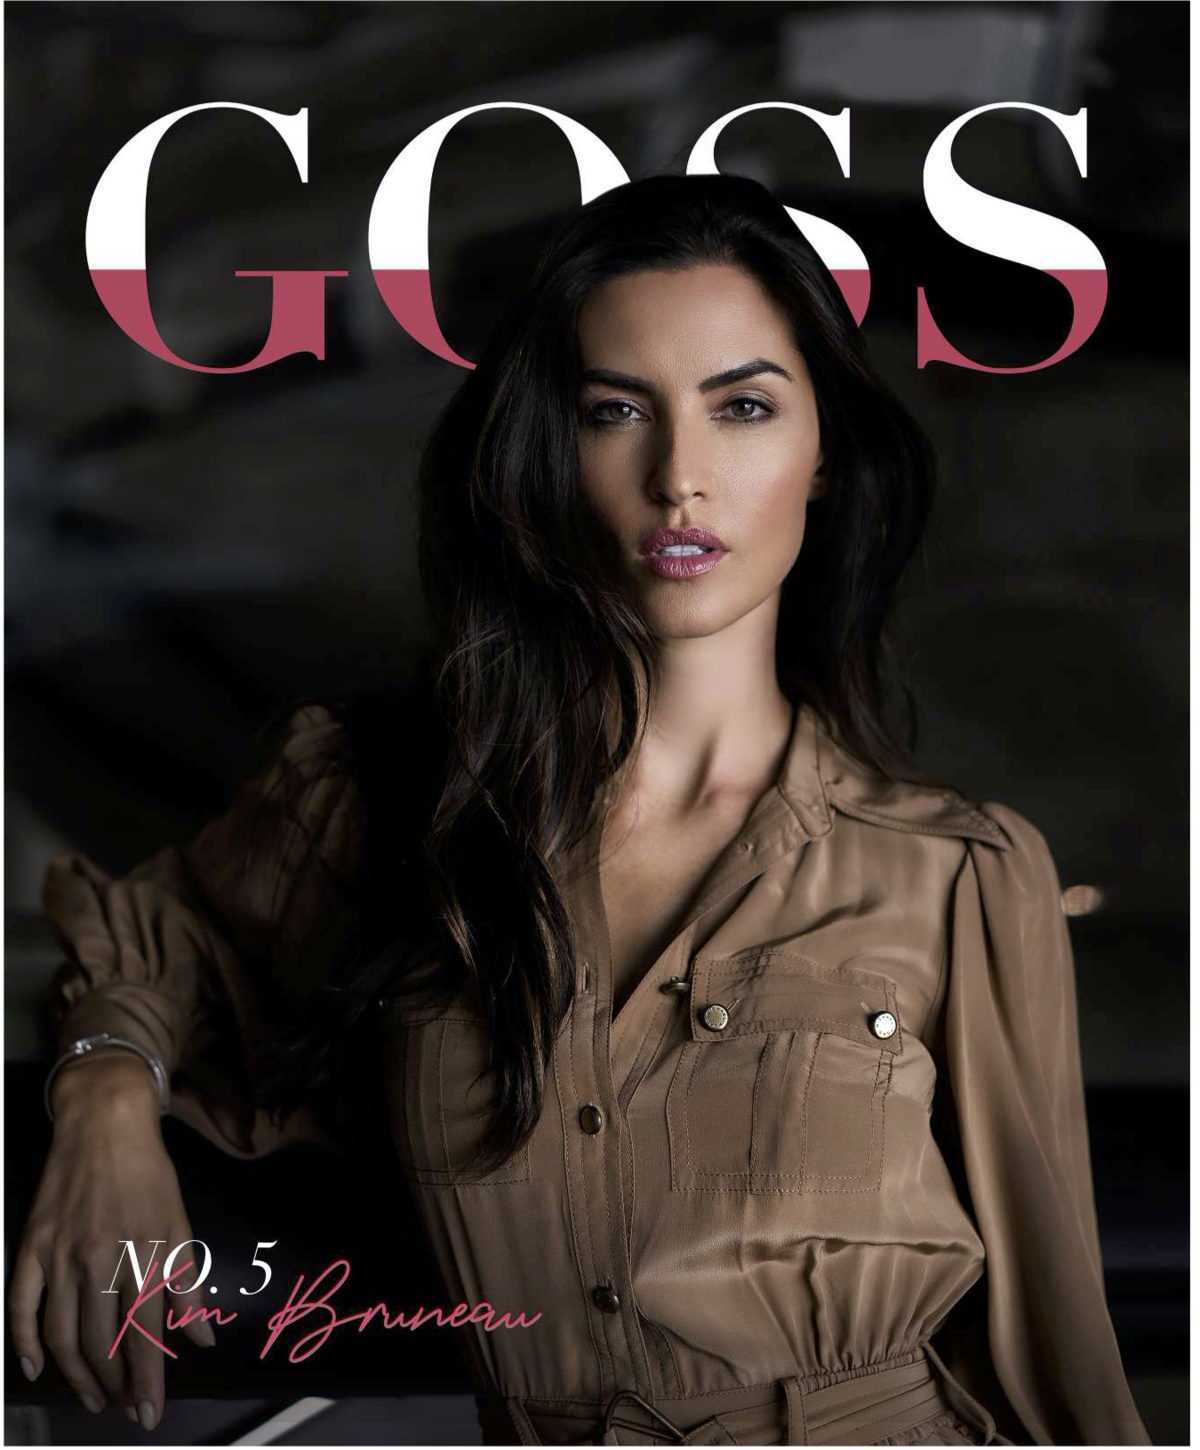 Girl Boss magazine